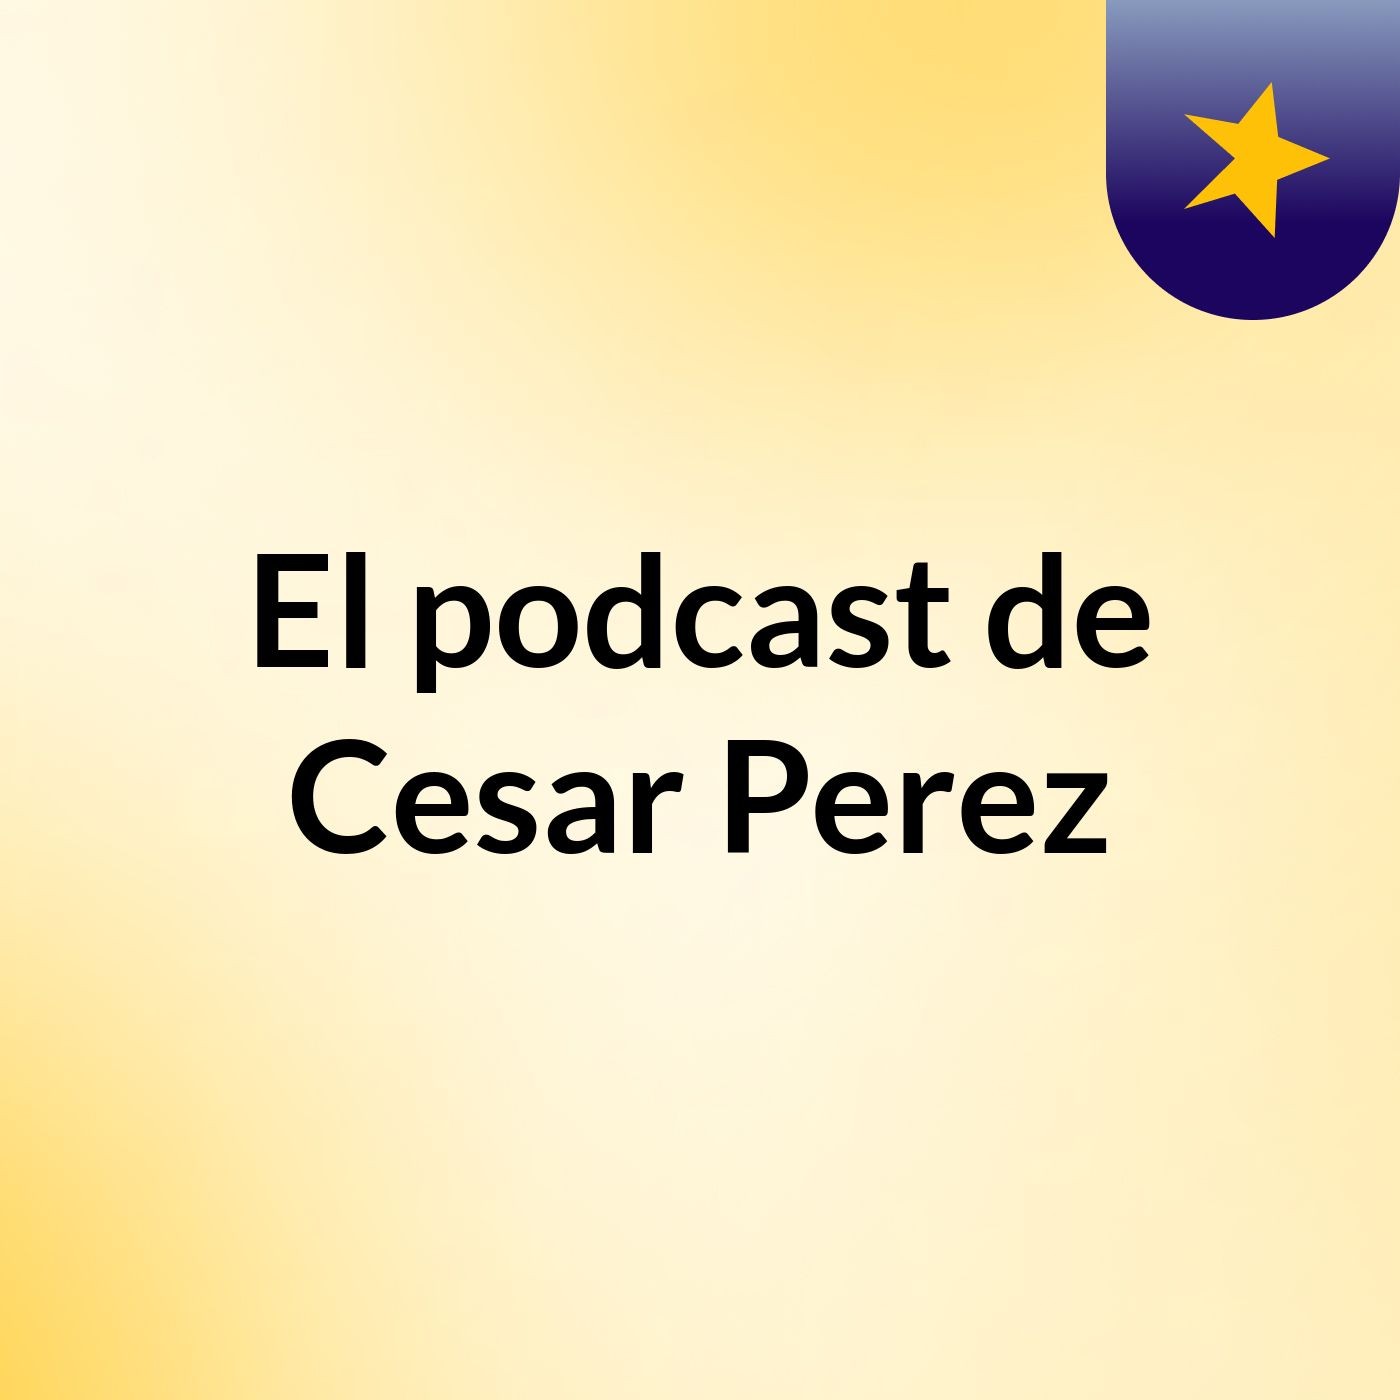 El podcast de Cesar Perez